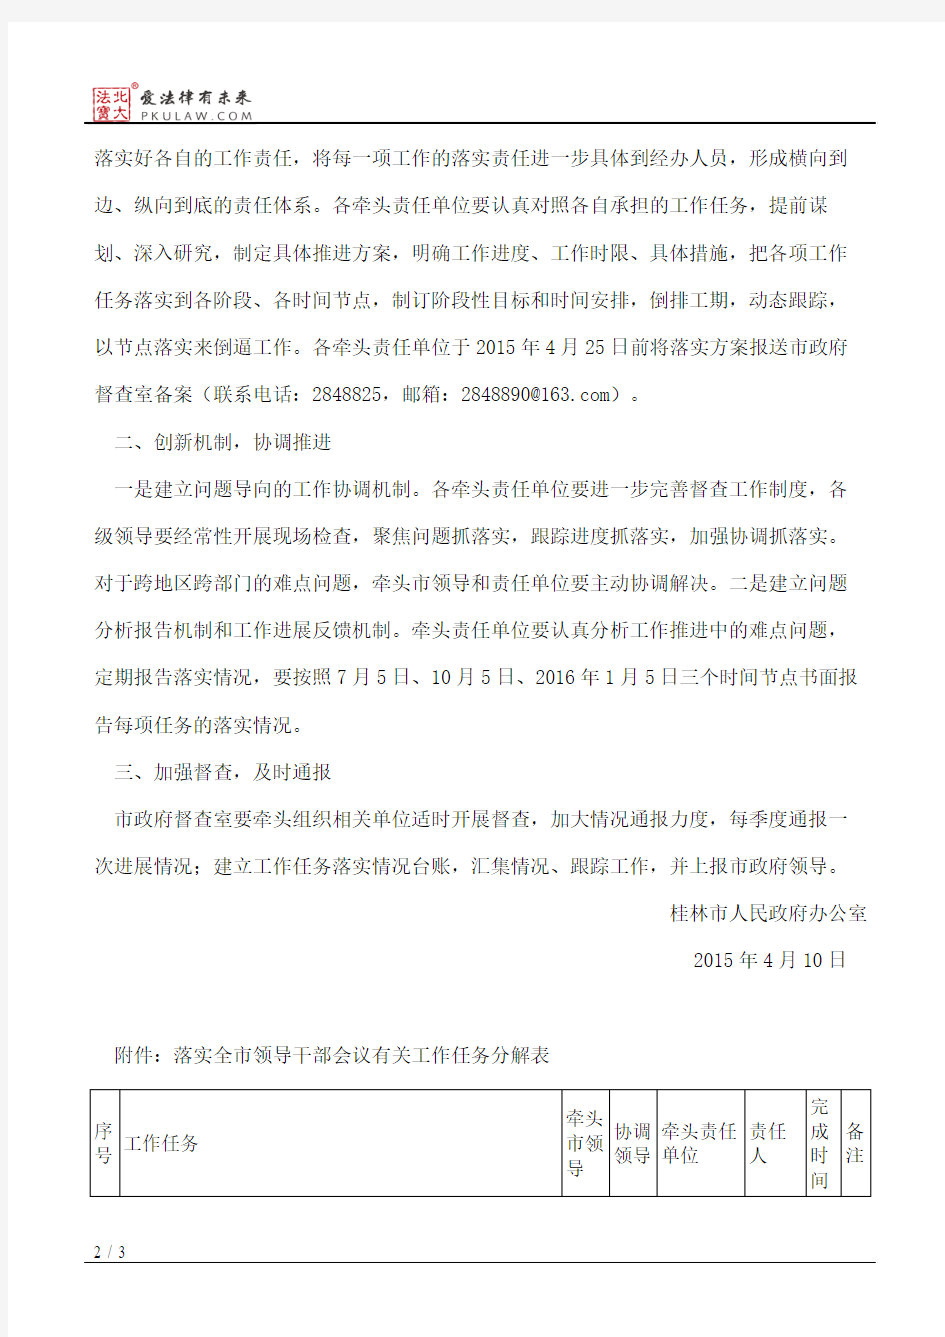 桂林市人民政府办公室关于印发落实全市领导干部会议有关工作任务